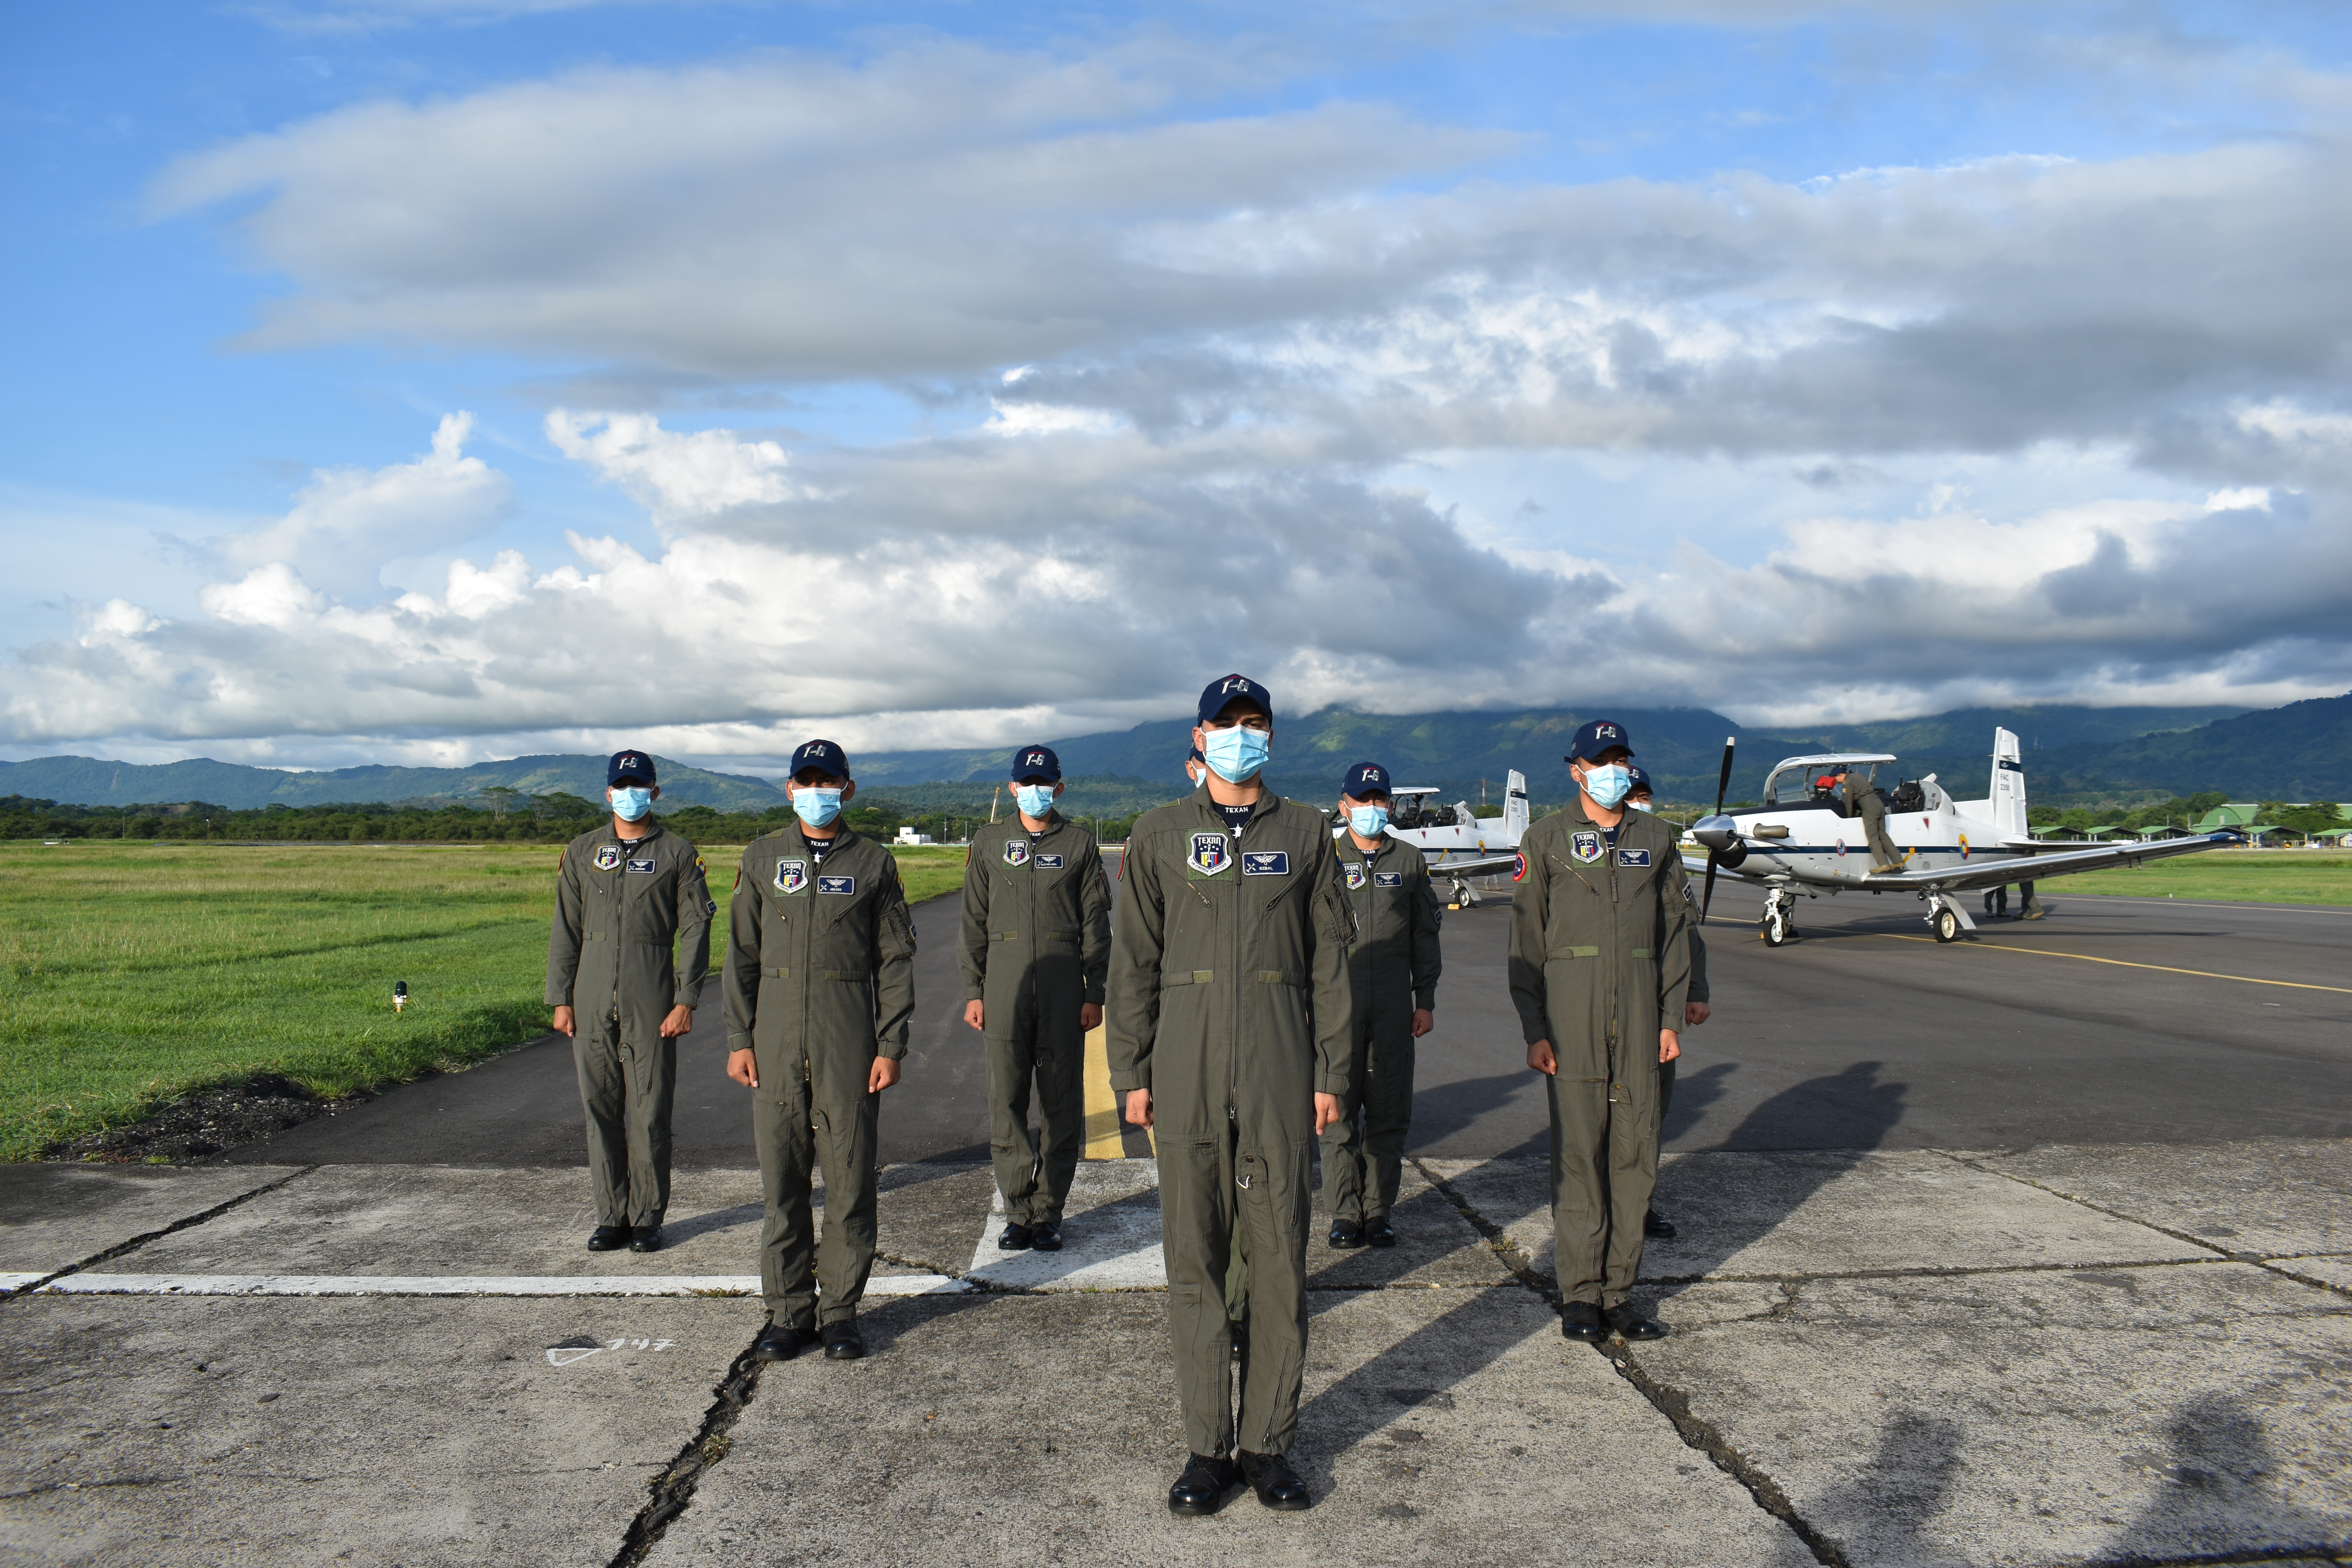 La Casa de los pilotos de Caza’, es cuna de las nuevas generaciones de pilotos militares de su Fuerza Aérea Colombiana